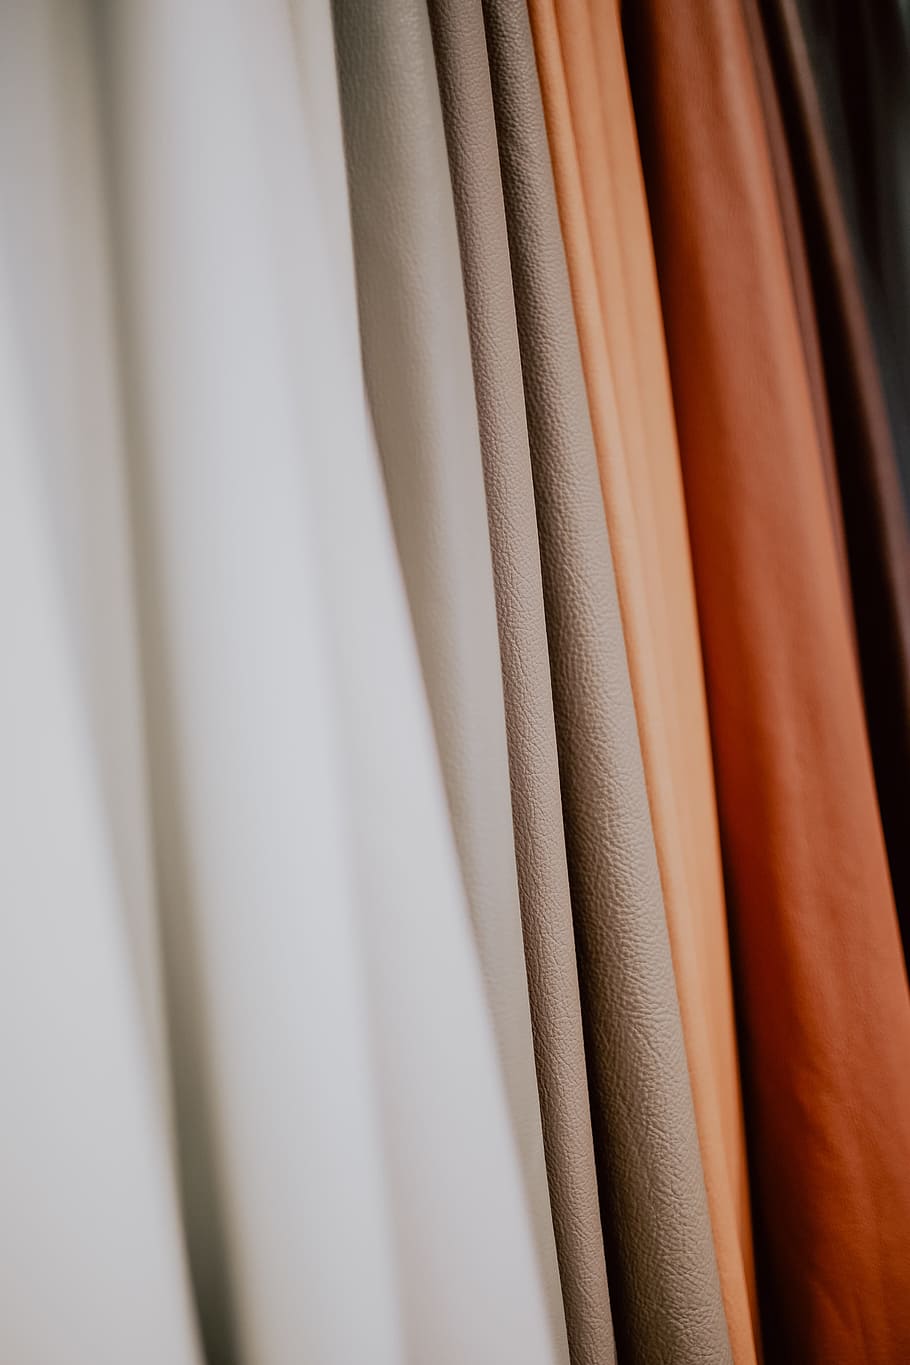 berwarna-warni, sampel kain pelapis, bahan, tekstil, gorden, kain, pilihan, variasi, pakaian, gantung